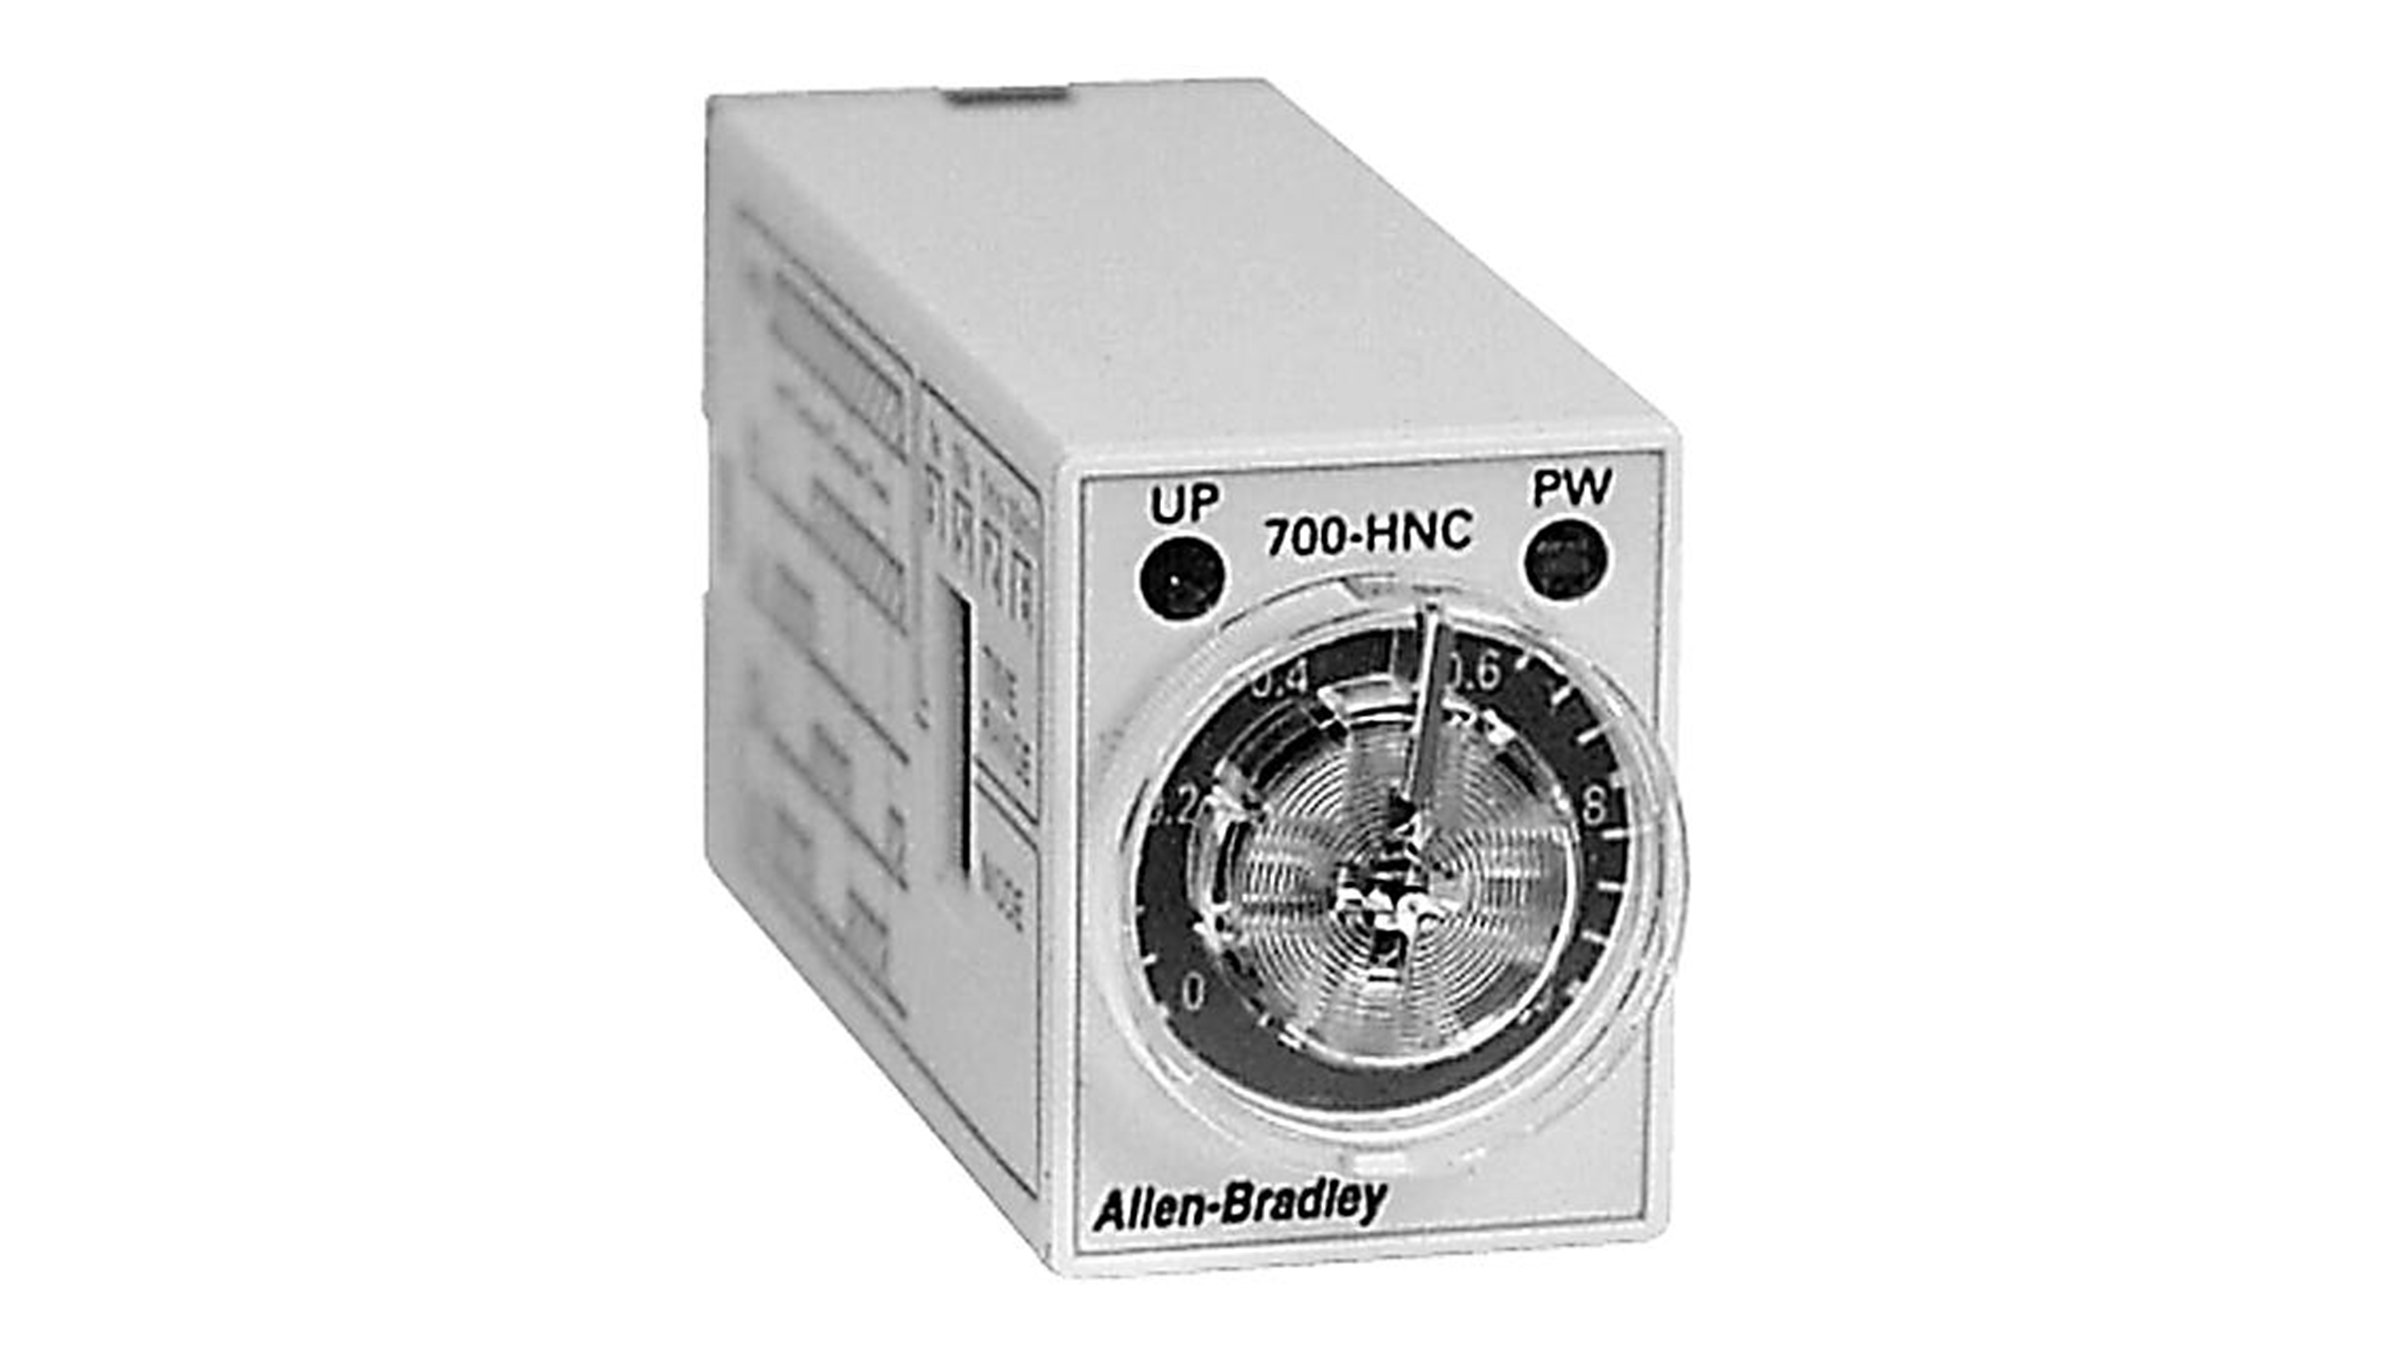 Los relés de temporización en miniatura Boletín 700-HNC de Allen-Bradley son algunos de los relés de temporización más pequeños disponibles.